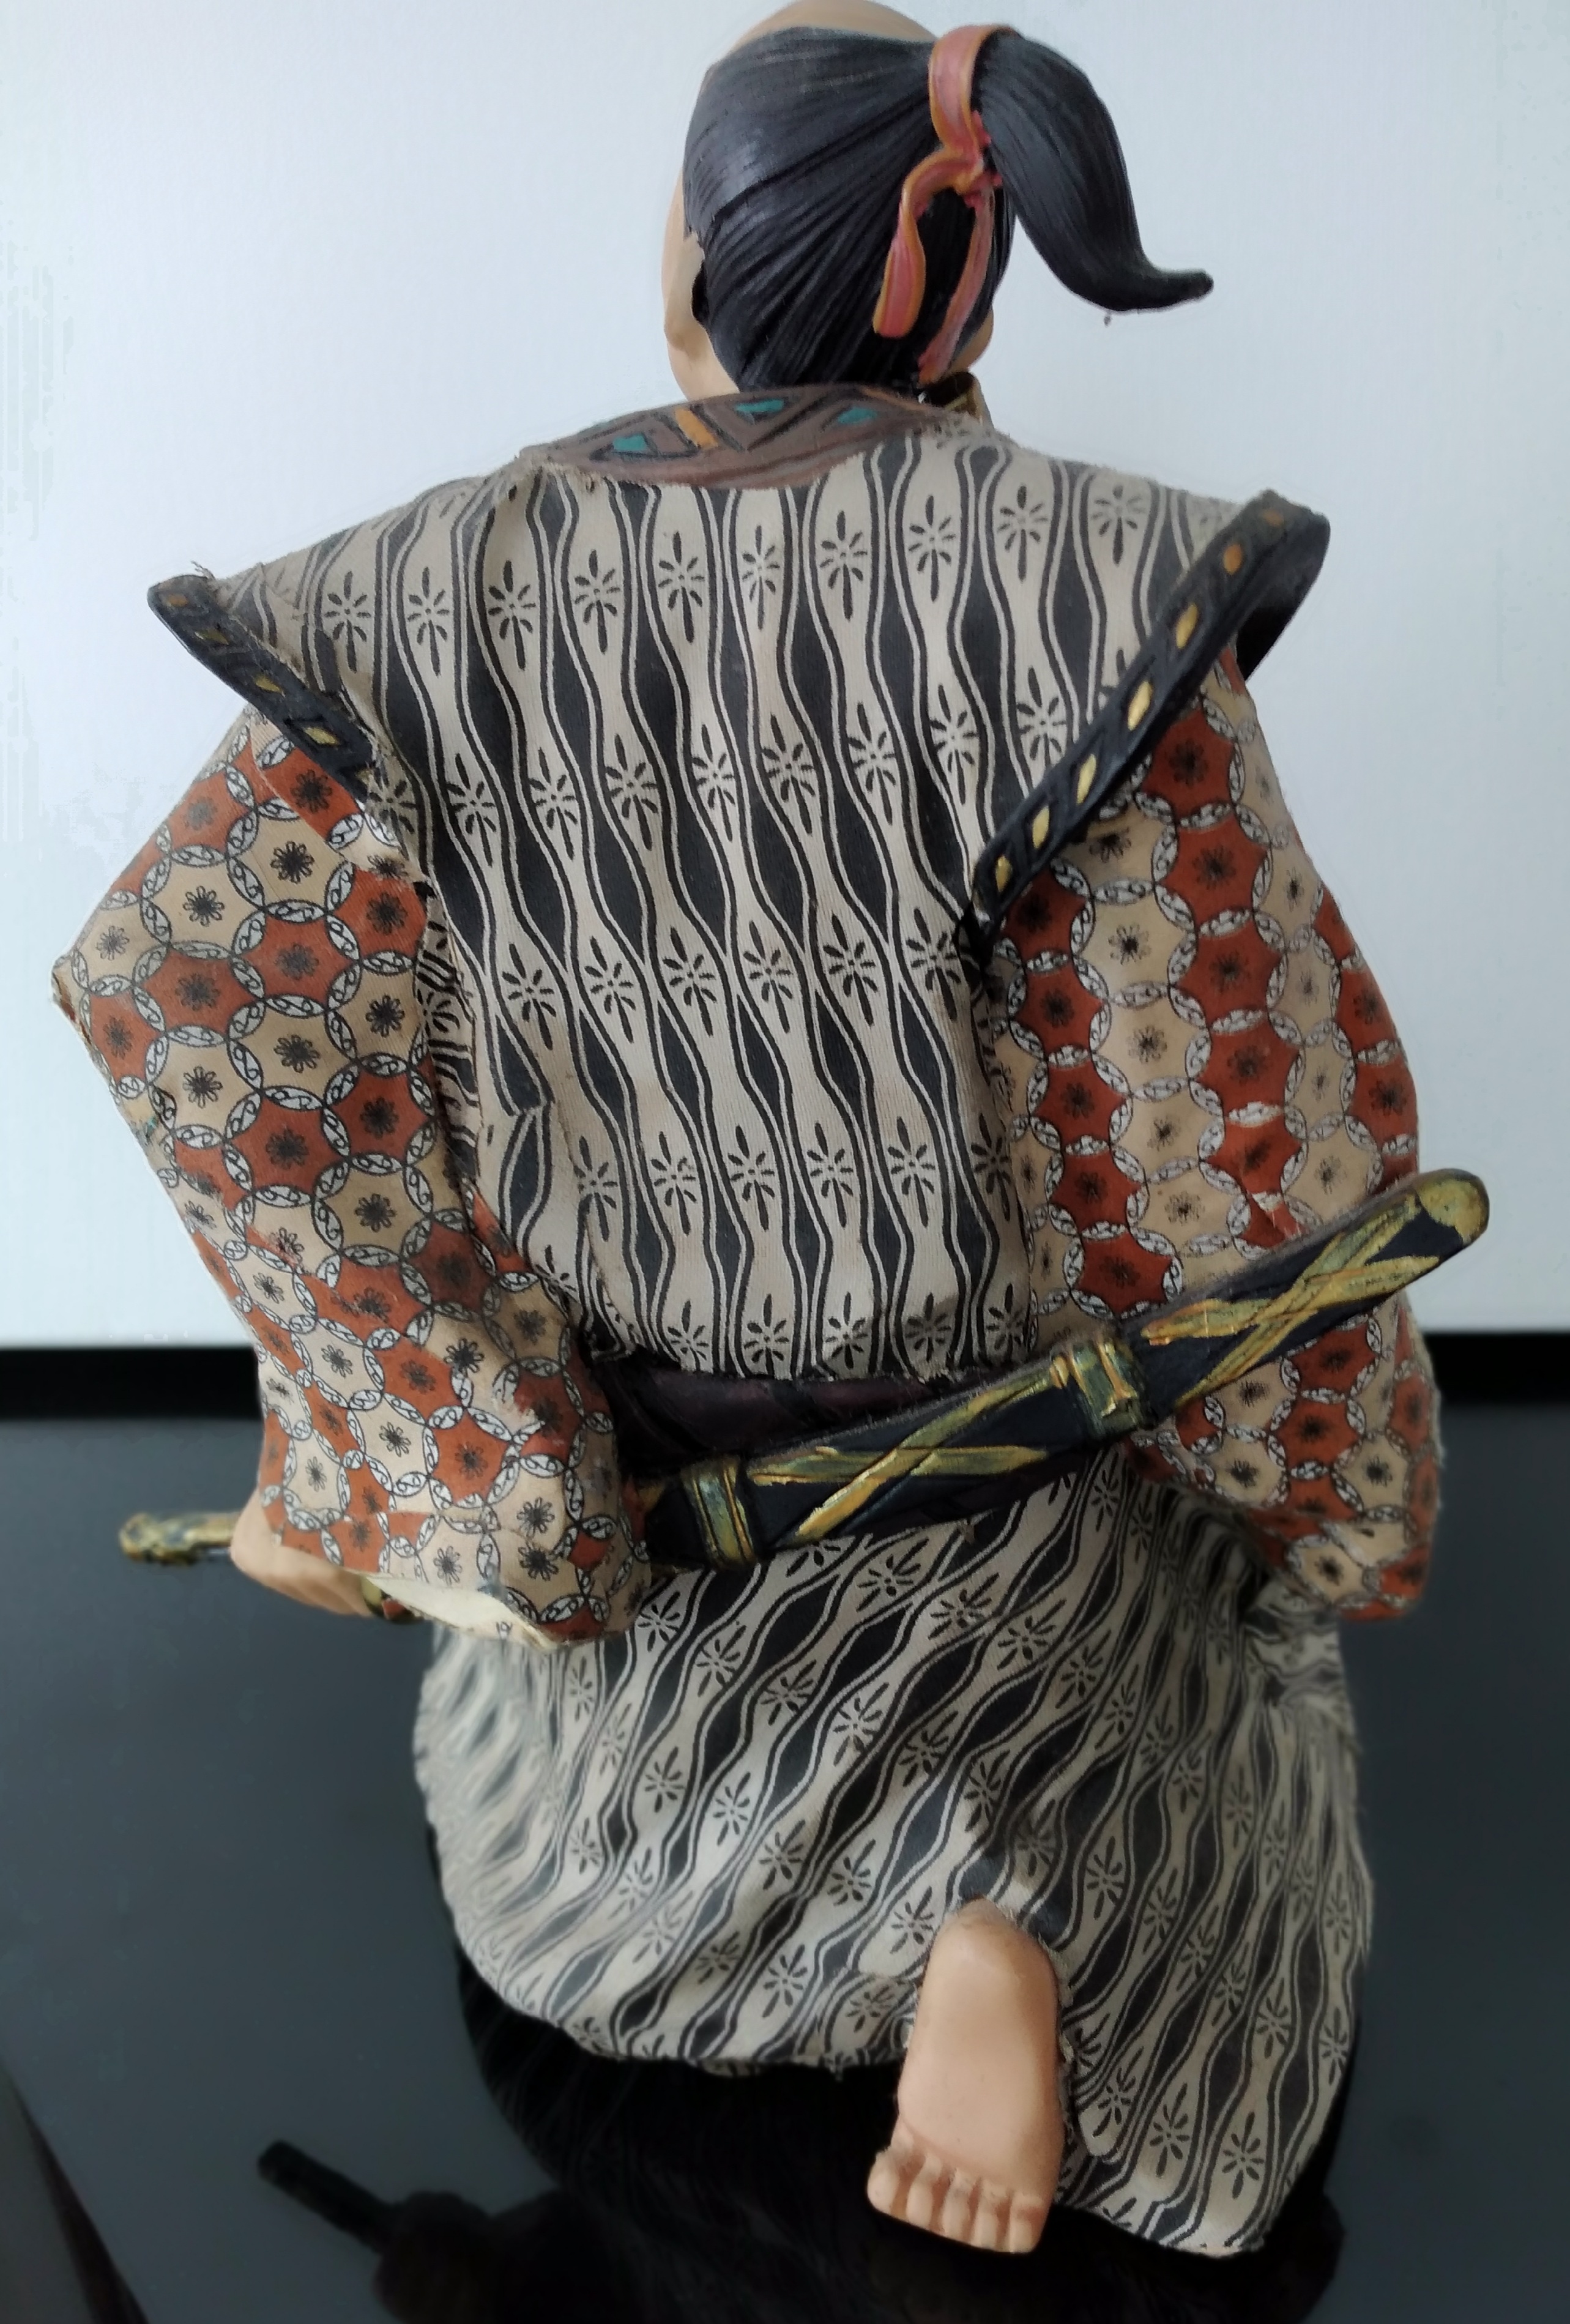 Escultura guerreiro samurai